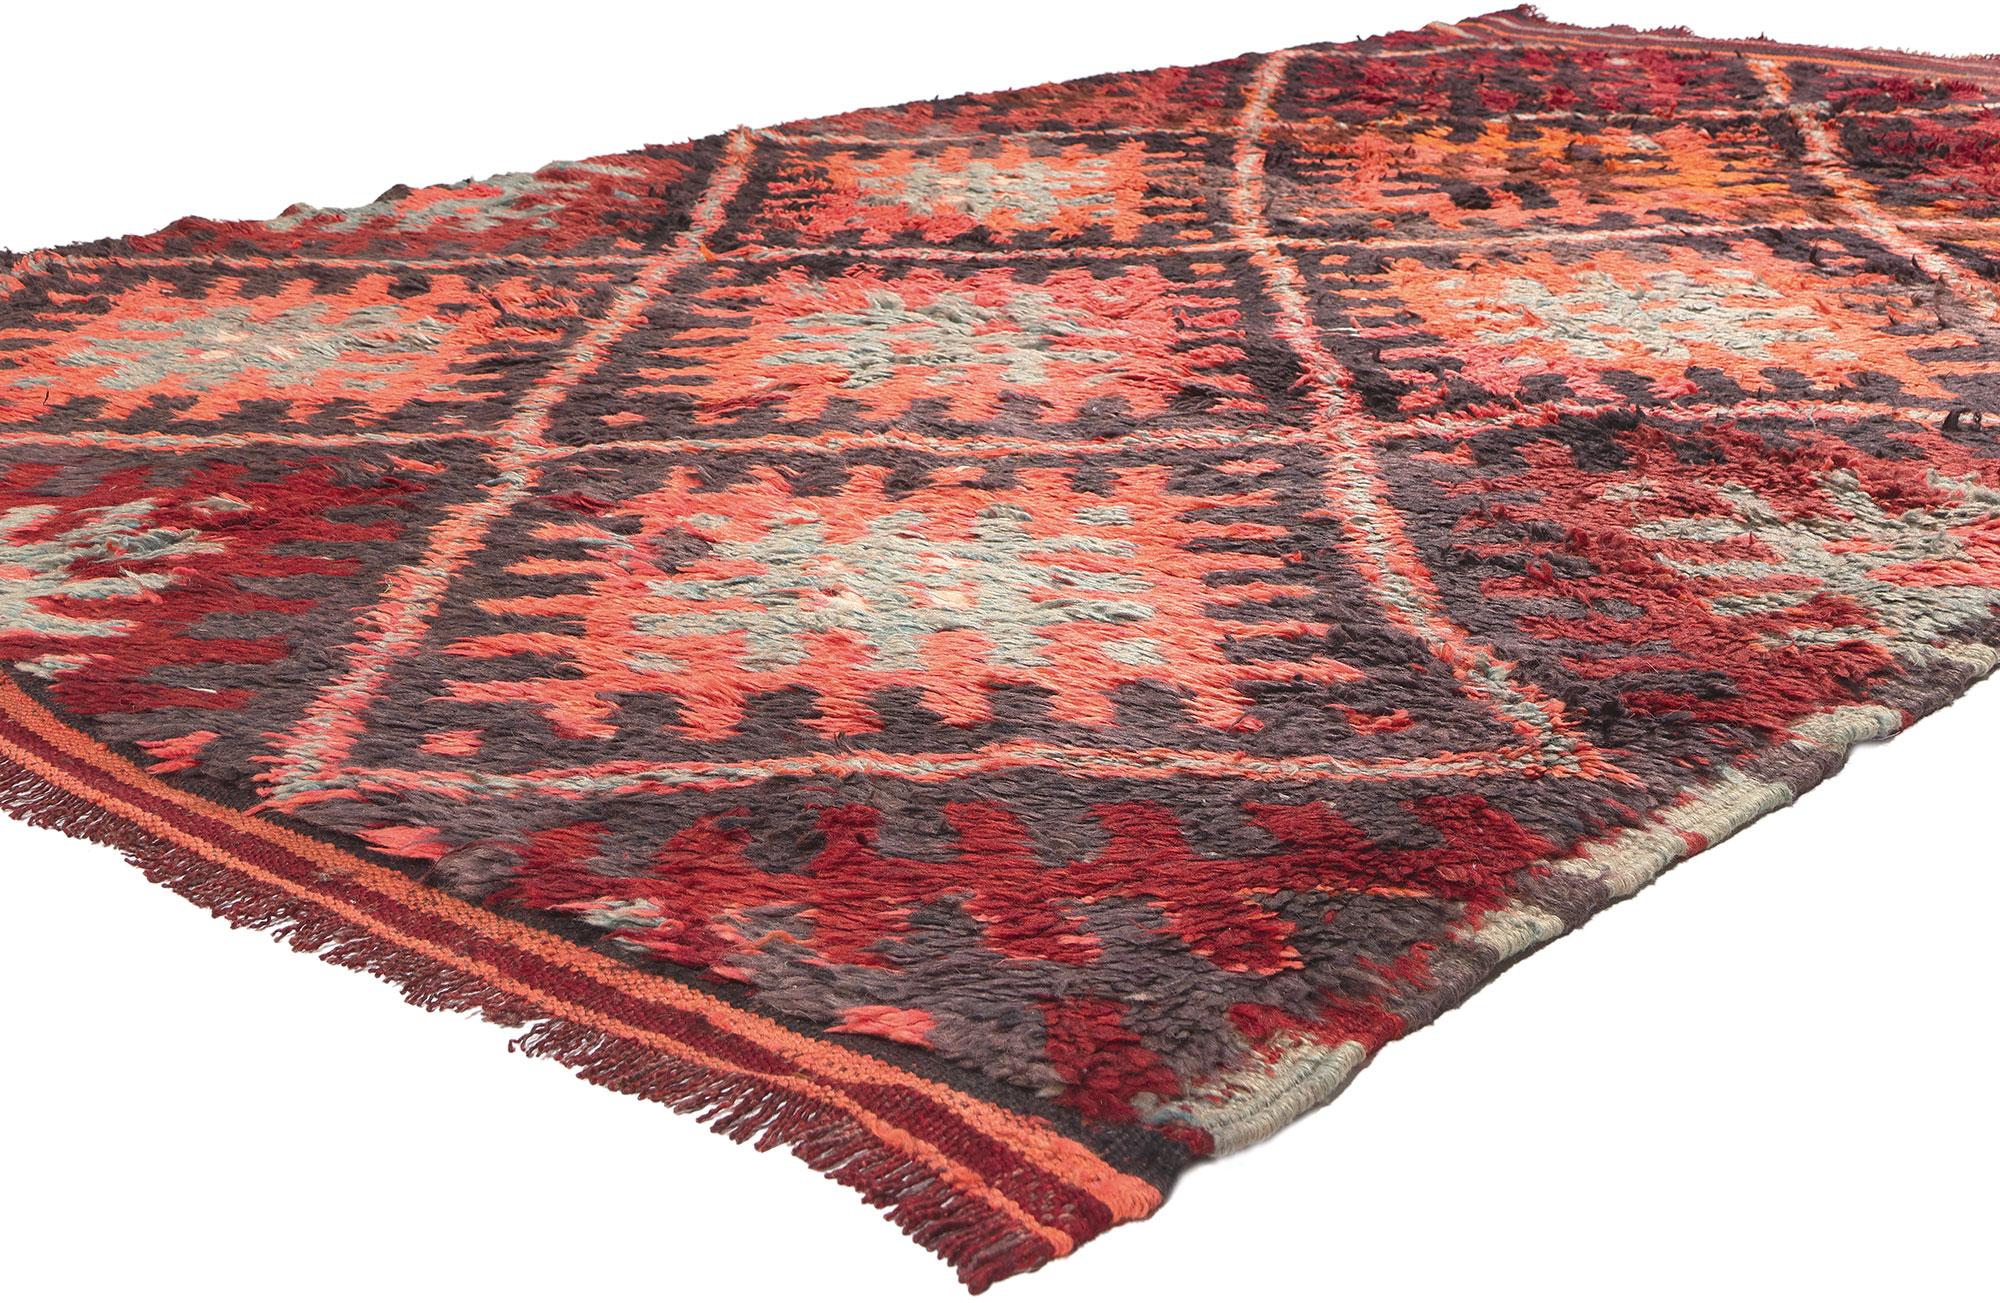 20932 Vintage Beni MGuild Marokkanischer Teppich, 06'06 x 10'08. 

In dem Bereich, in dem der Midcentury Modern Chic mit dem nomadischen Charme verschmilzt, finden Sie diesen handgeknüpften marokkanischen Beni Mguild-Teppich aus Wolle - ein